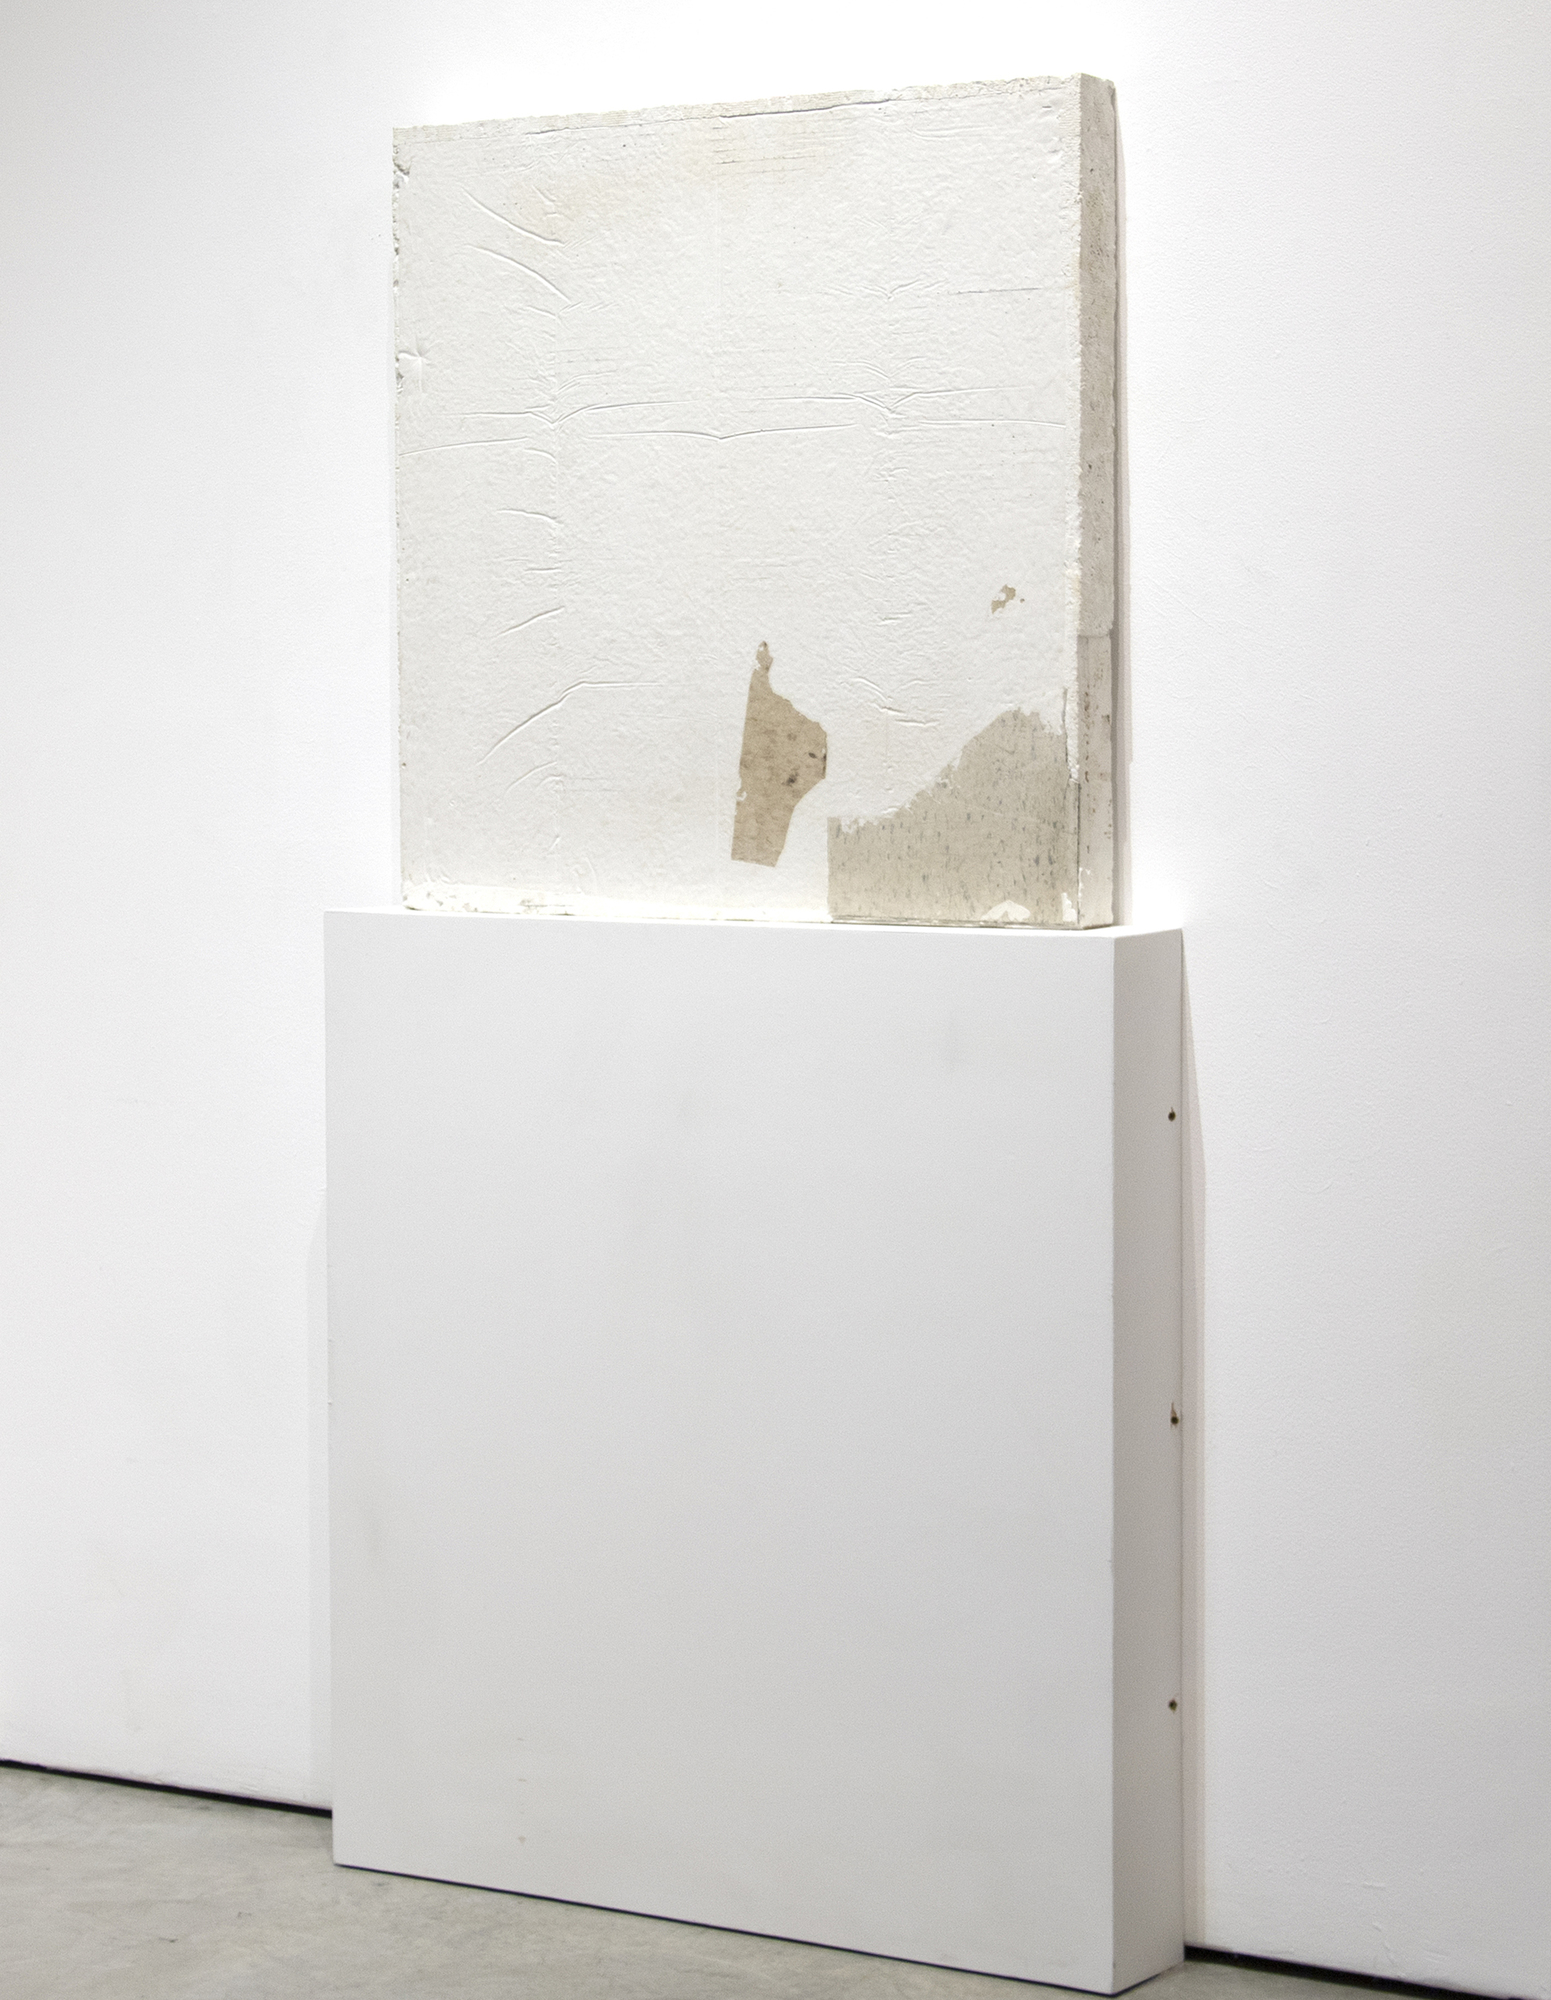 PORtails de maître - Sans titre (revêtement de sol) - ciment blanc, débris, revêtement de sol - 35 x 35 x 35 x 3 po.